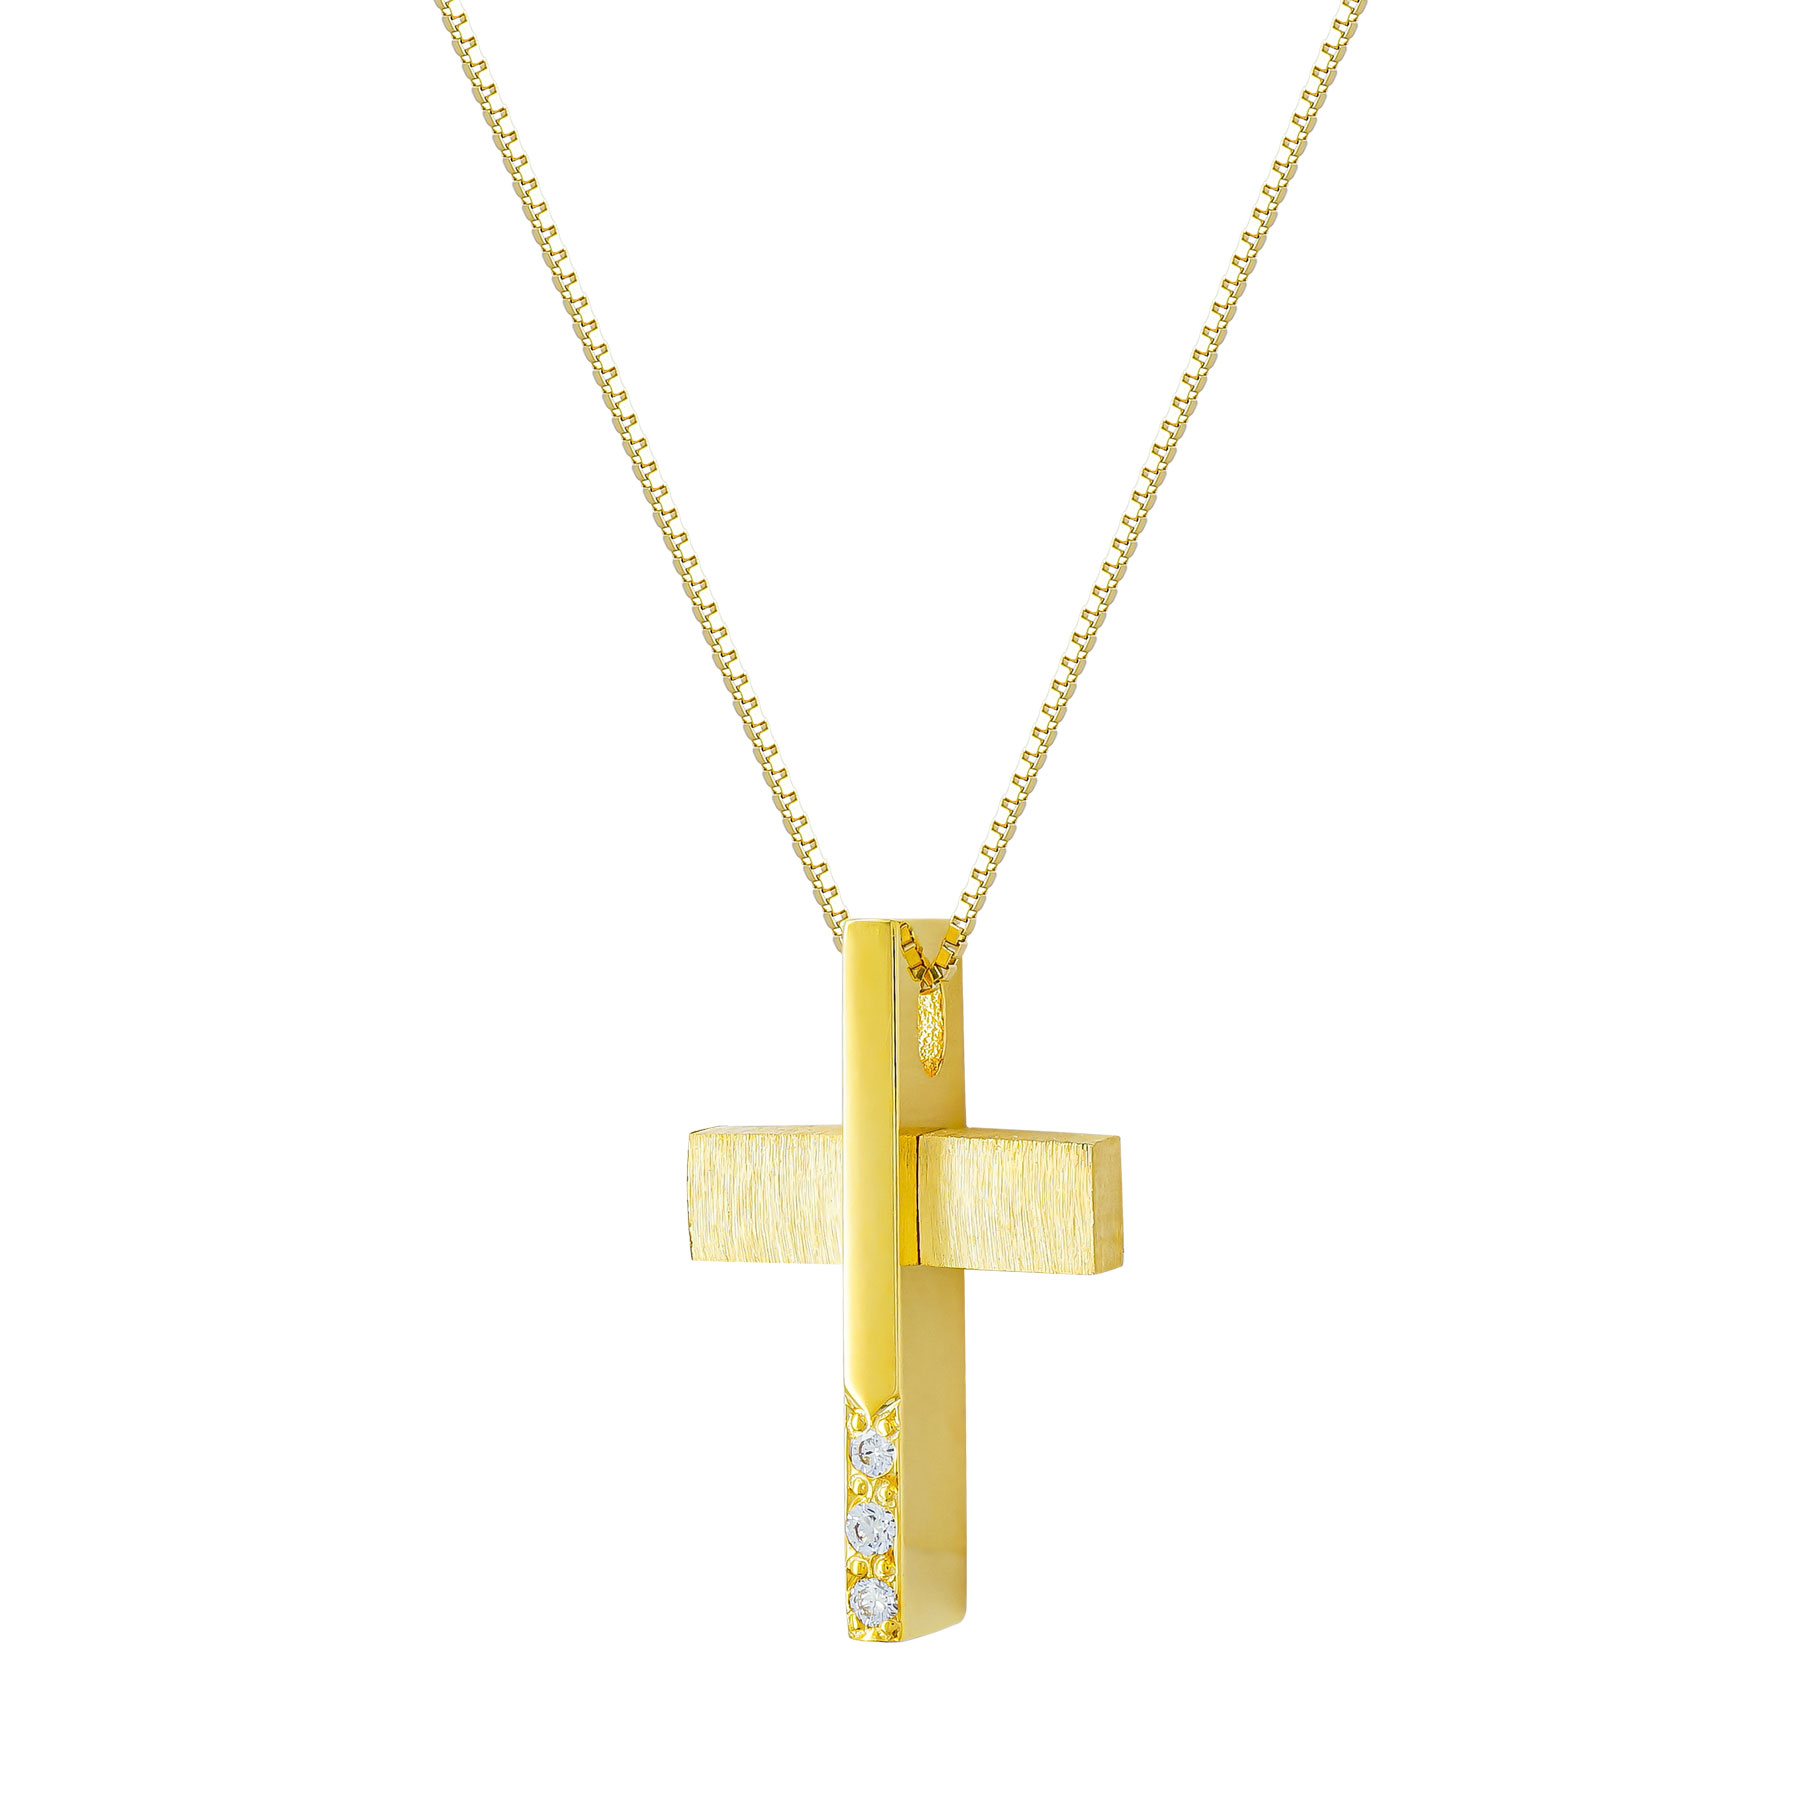 Σταυρός Βάπτισης Γυναικείος Σε Kίτρινο Χρυσό 18 Καρατίων Με Διαμάντια Brilliant ST3189